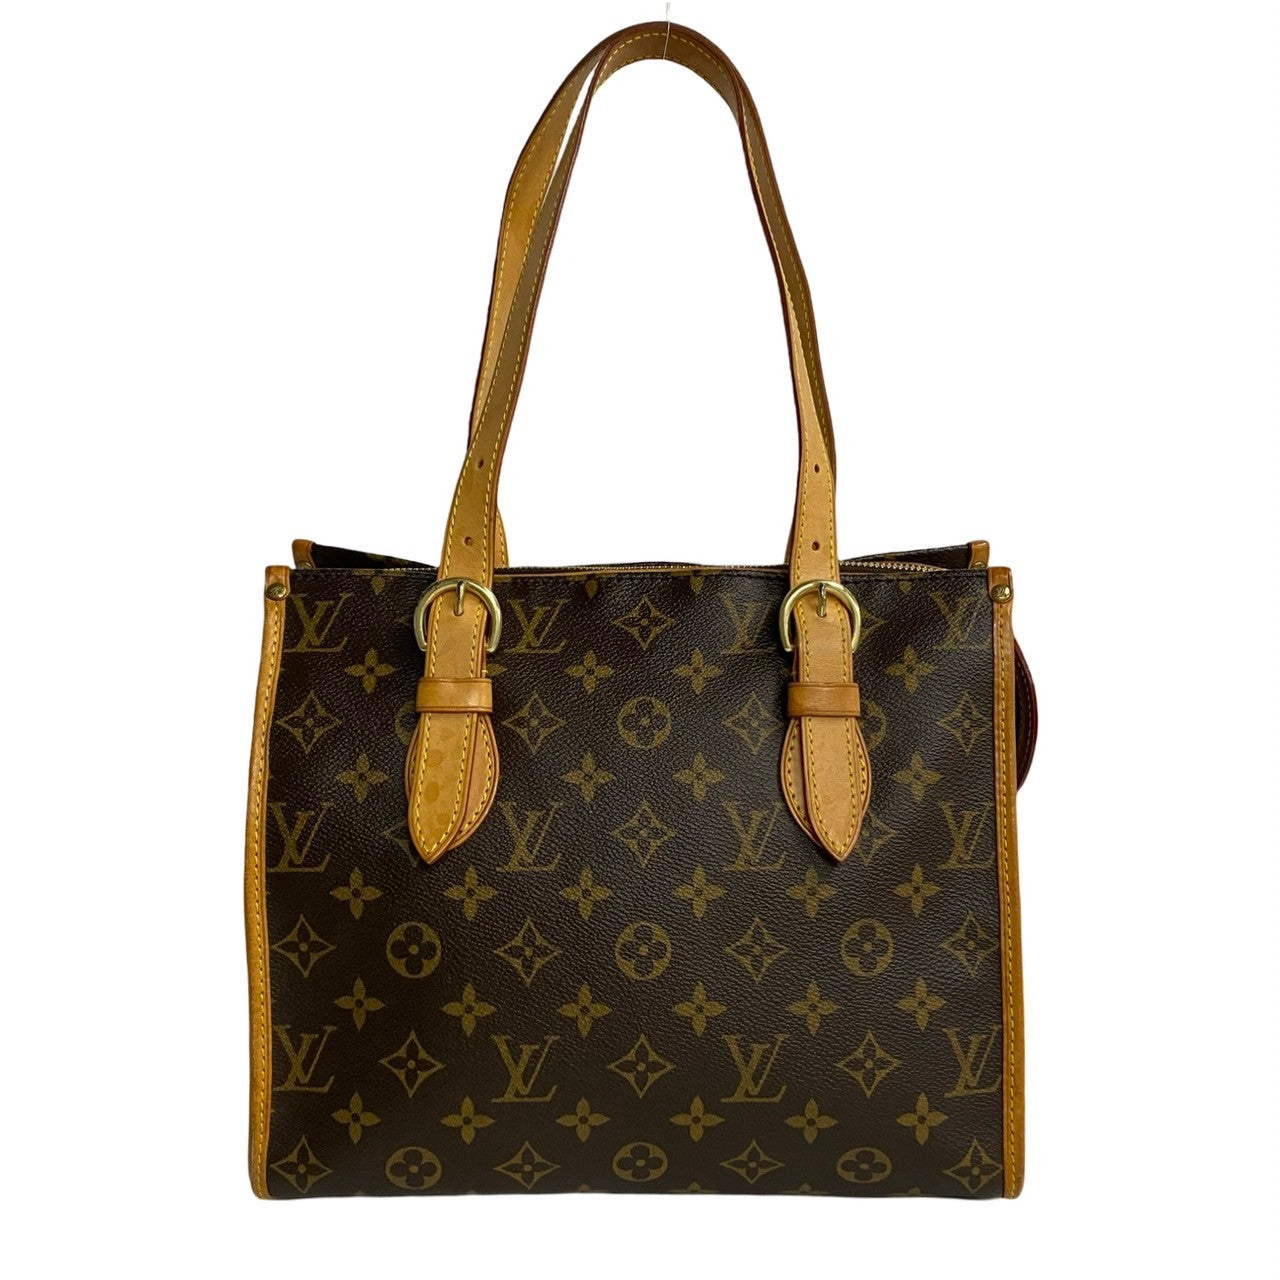 Louis Vuitton Popincourt Haut Canvas Shoulder Bag M40007 in Good condition